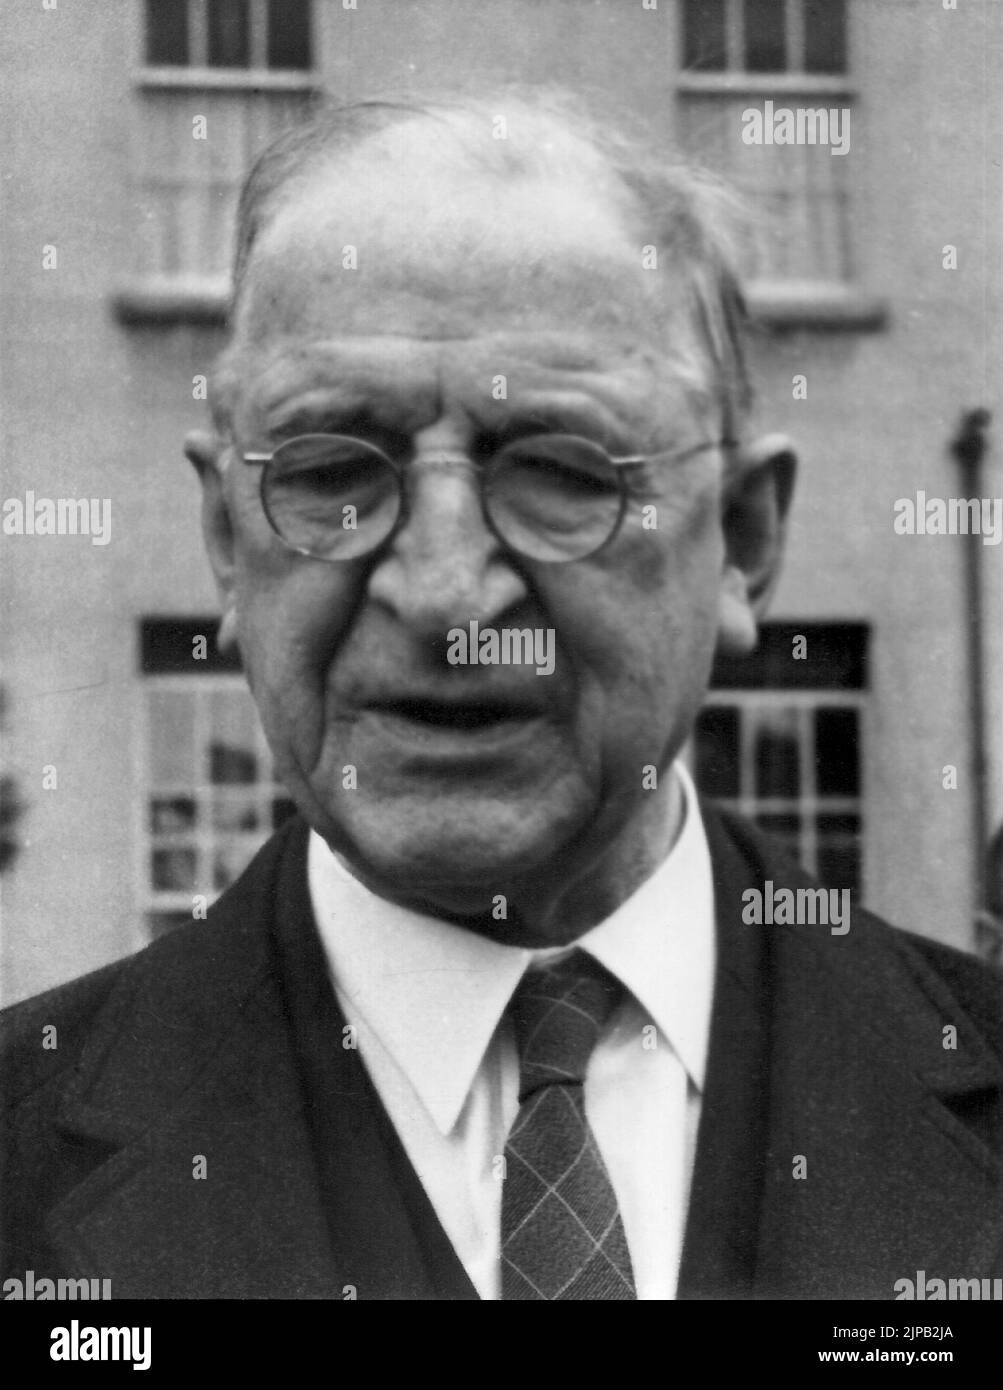 Éamon de Valera, der irische revolutionäre und politische Führer, im Jahr 1960s, als er Präsident von Irland war Stockfoto